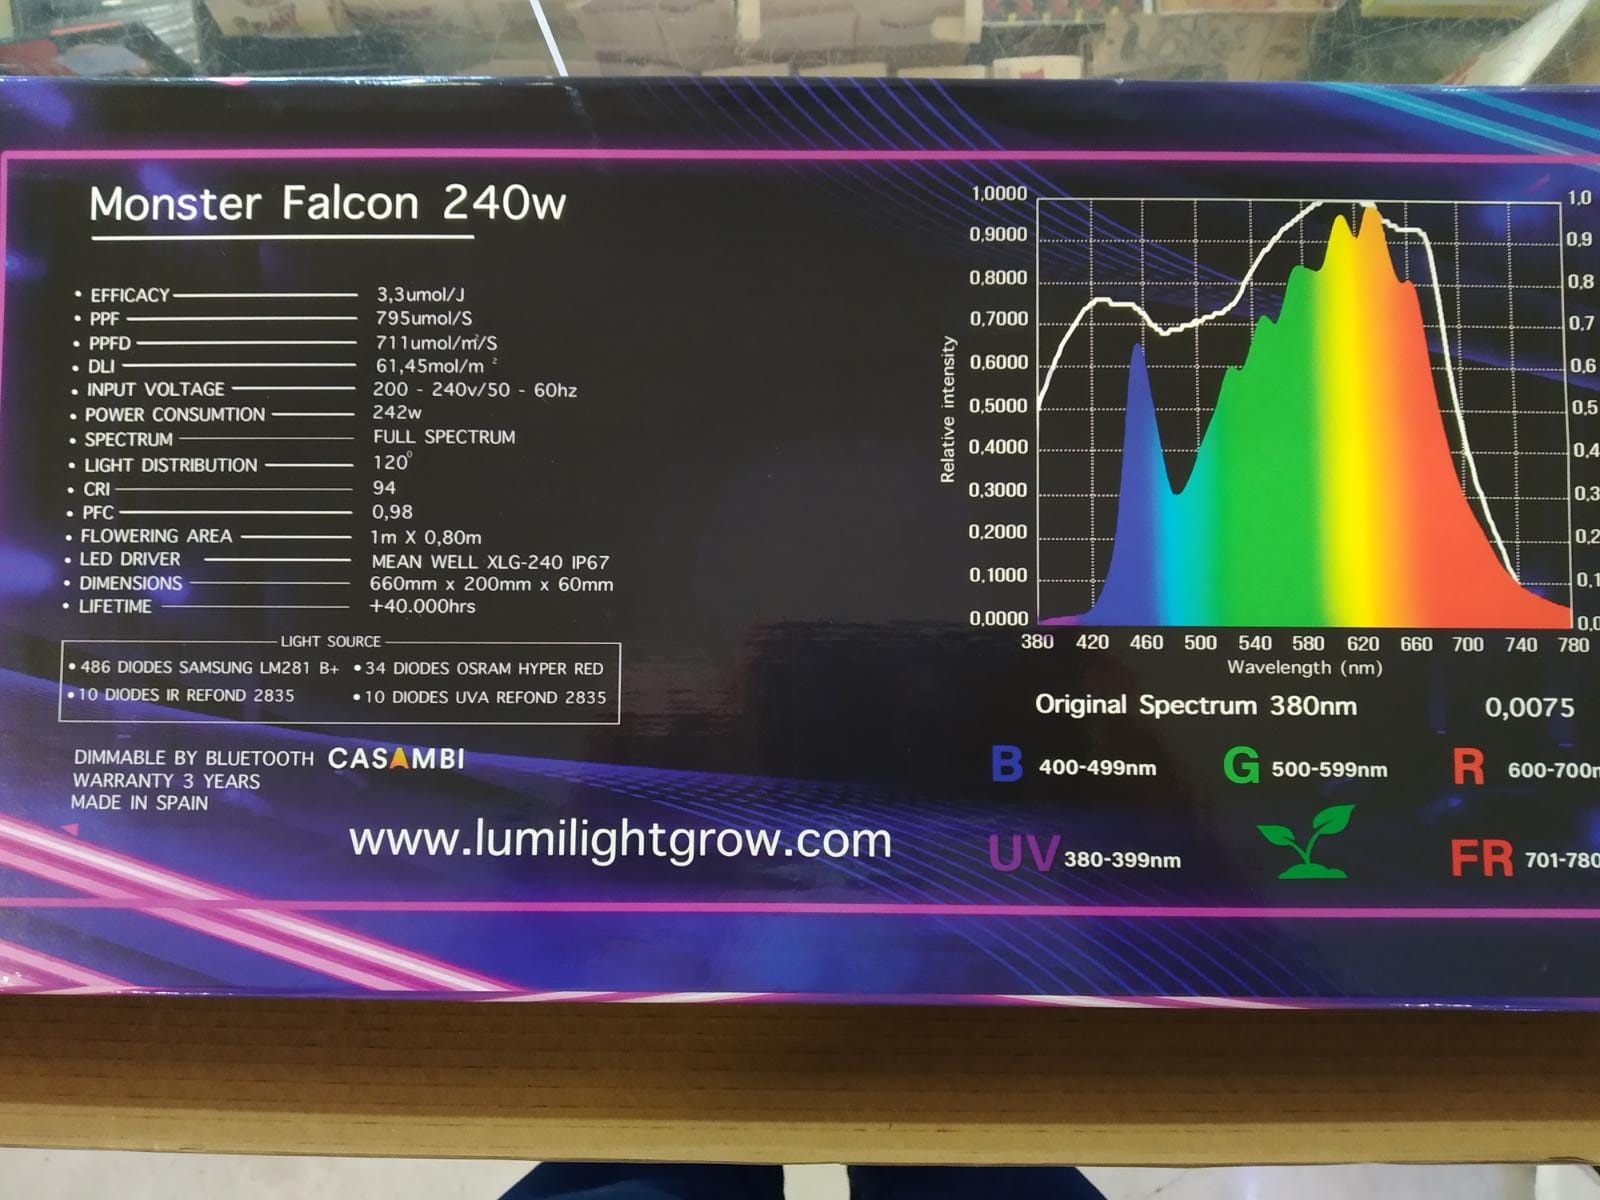 LUMINARIA LED FALCON 240W 3.3 REGULABLE POR BLUETOOH LUMILIGHT